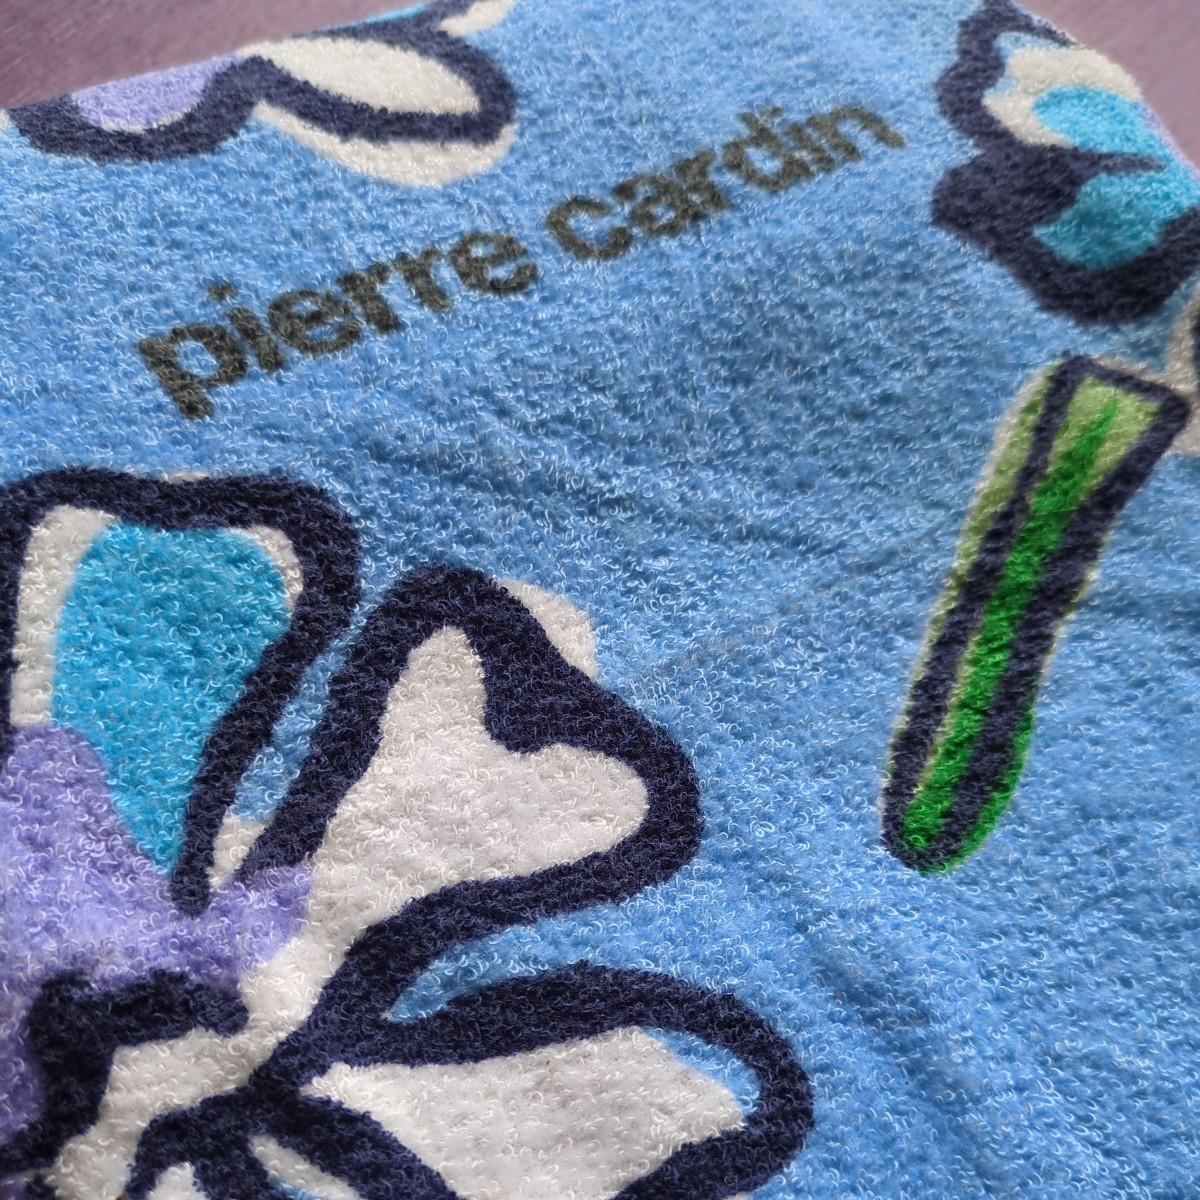  Pierre Cardin банное полотенце 62×114 cm хлопок 100% внутри . полотенце тонкий цветочный принт голубой × белый pierre cardin / сделано в Японии 